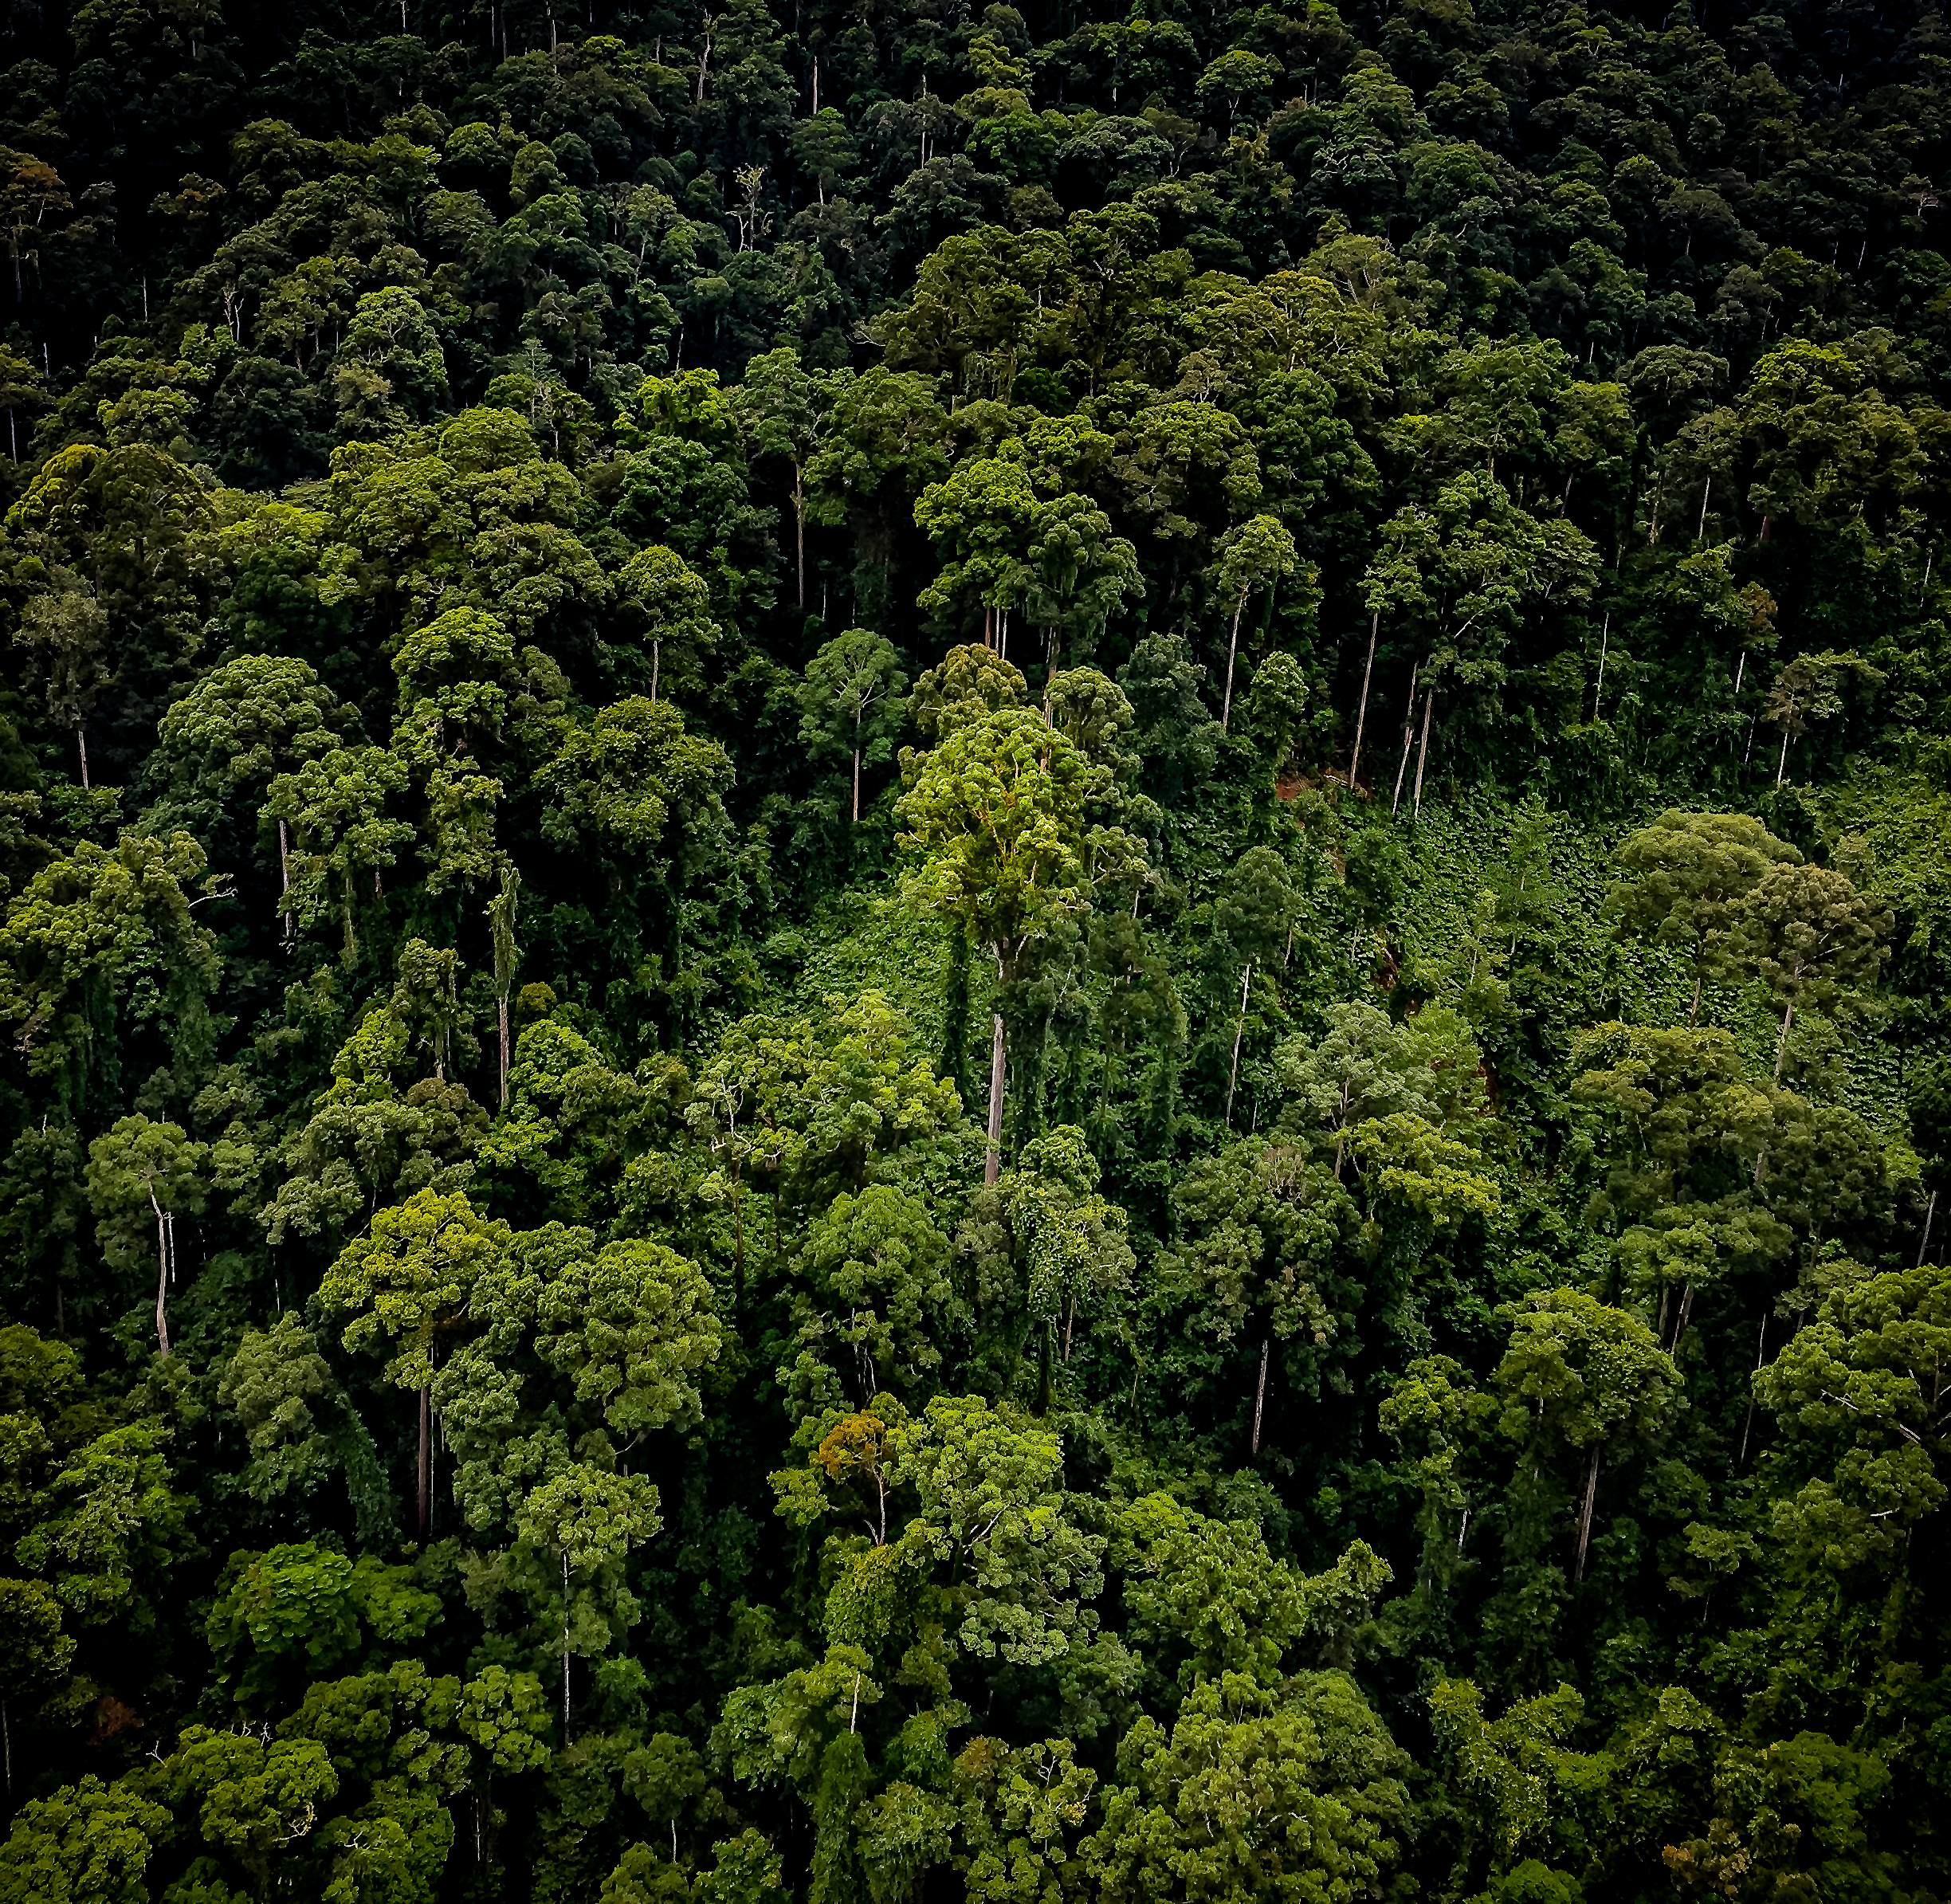 Der Baum in der Bildmitte ist über 90 Meter hoch - der höchste bislang bekannte Regenwaldbaum